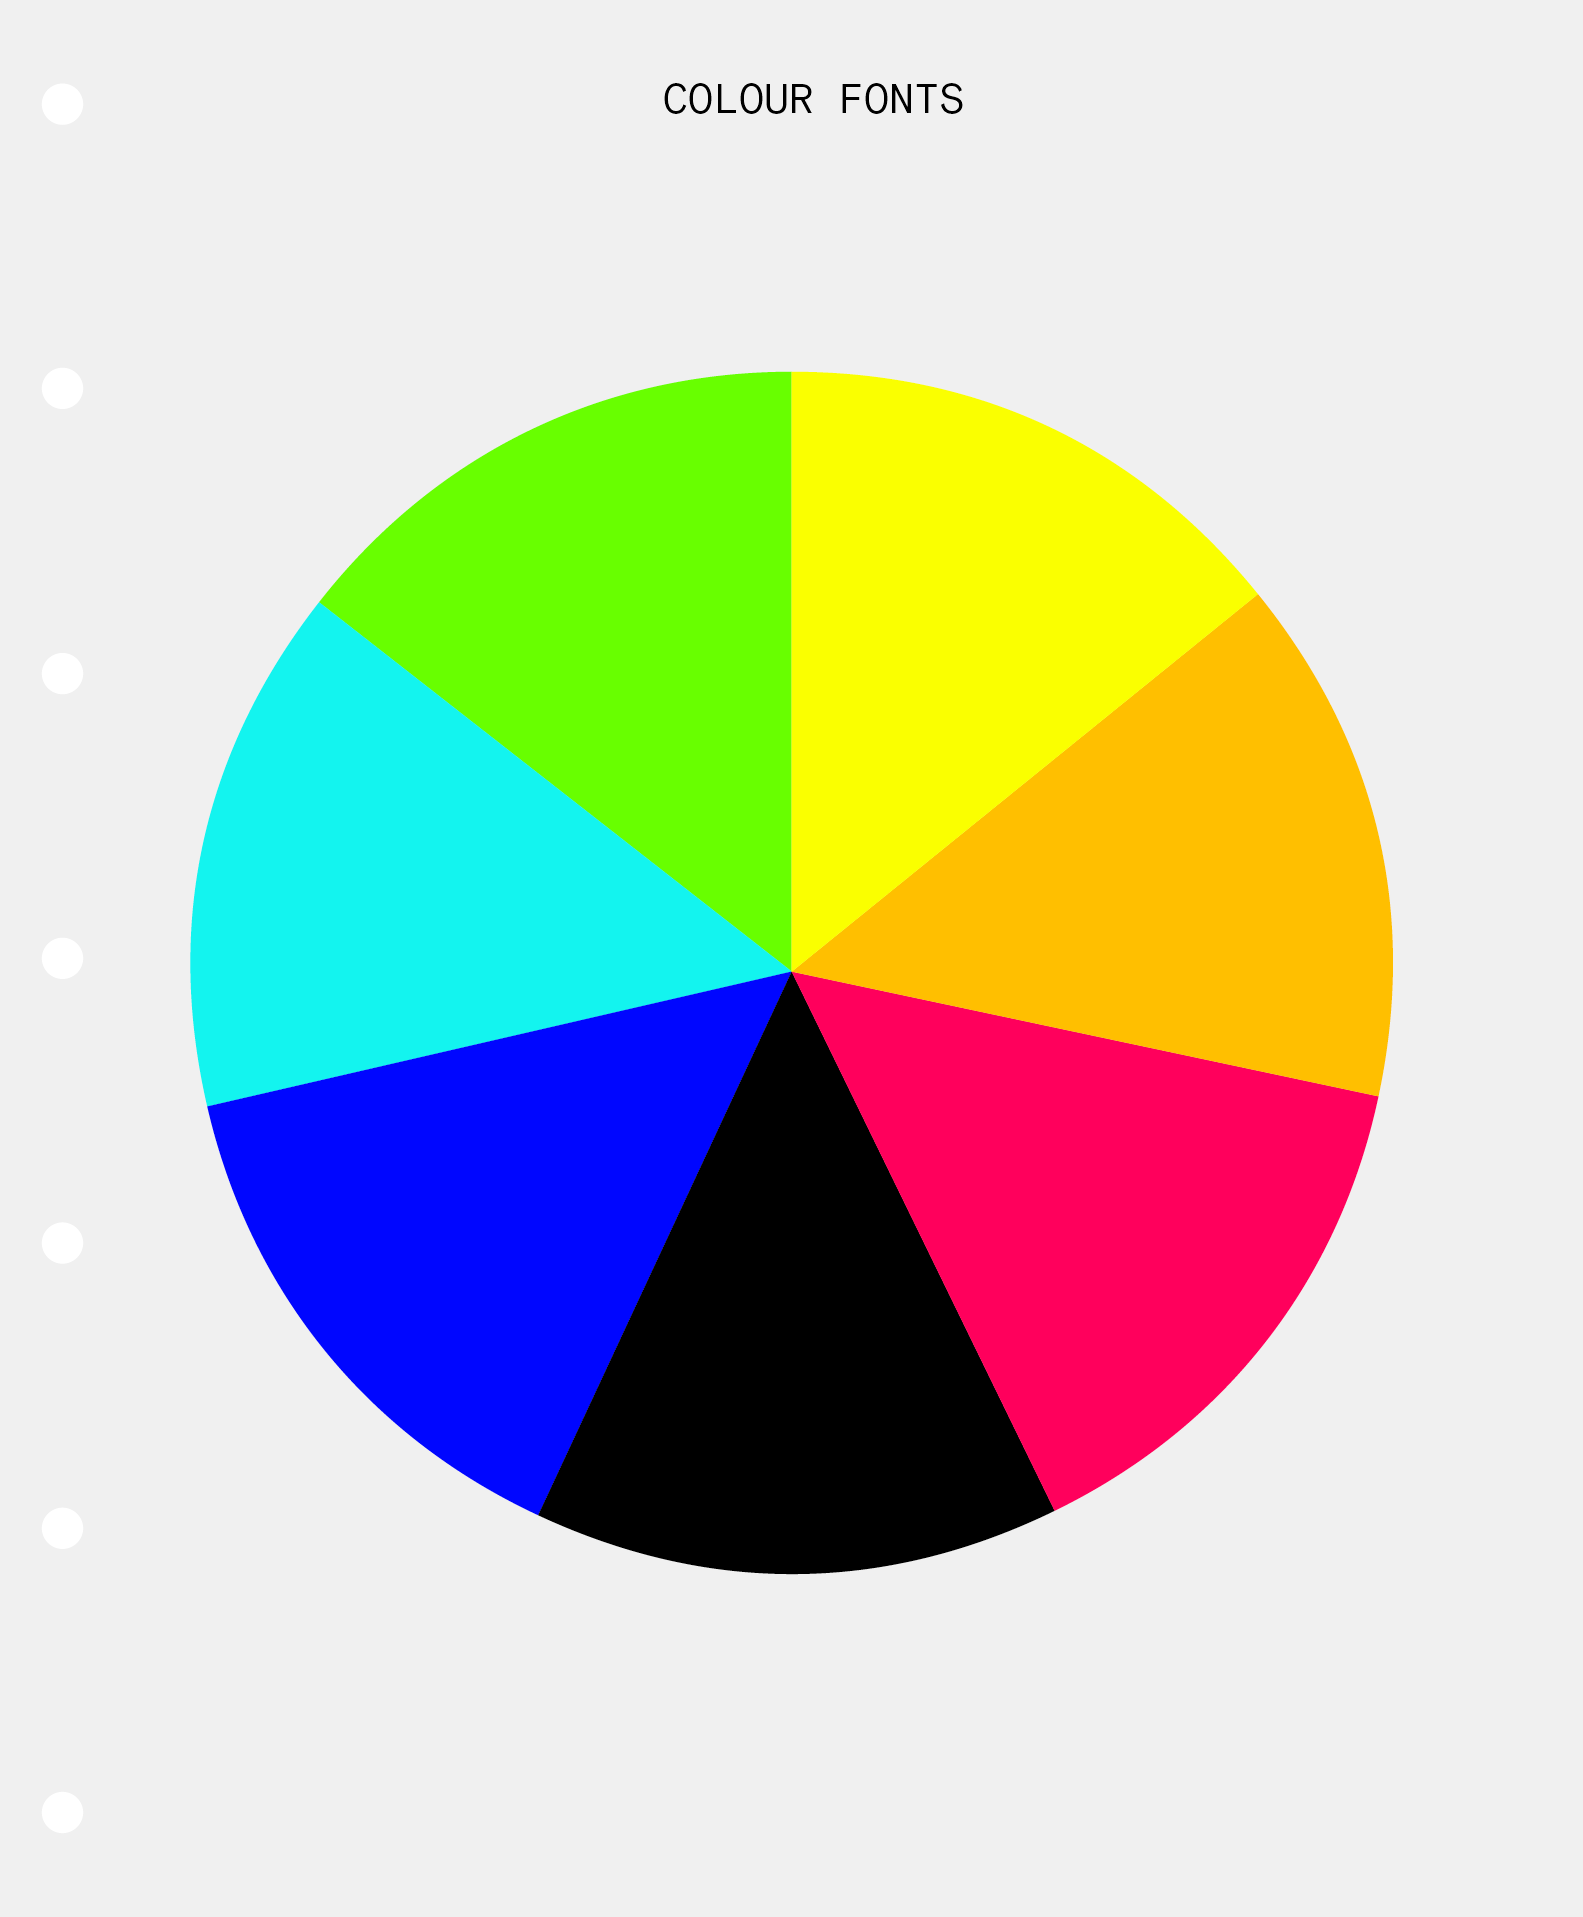 Colour Fonts illustration